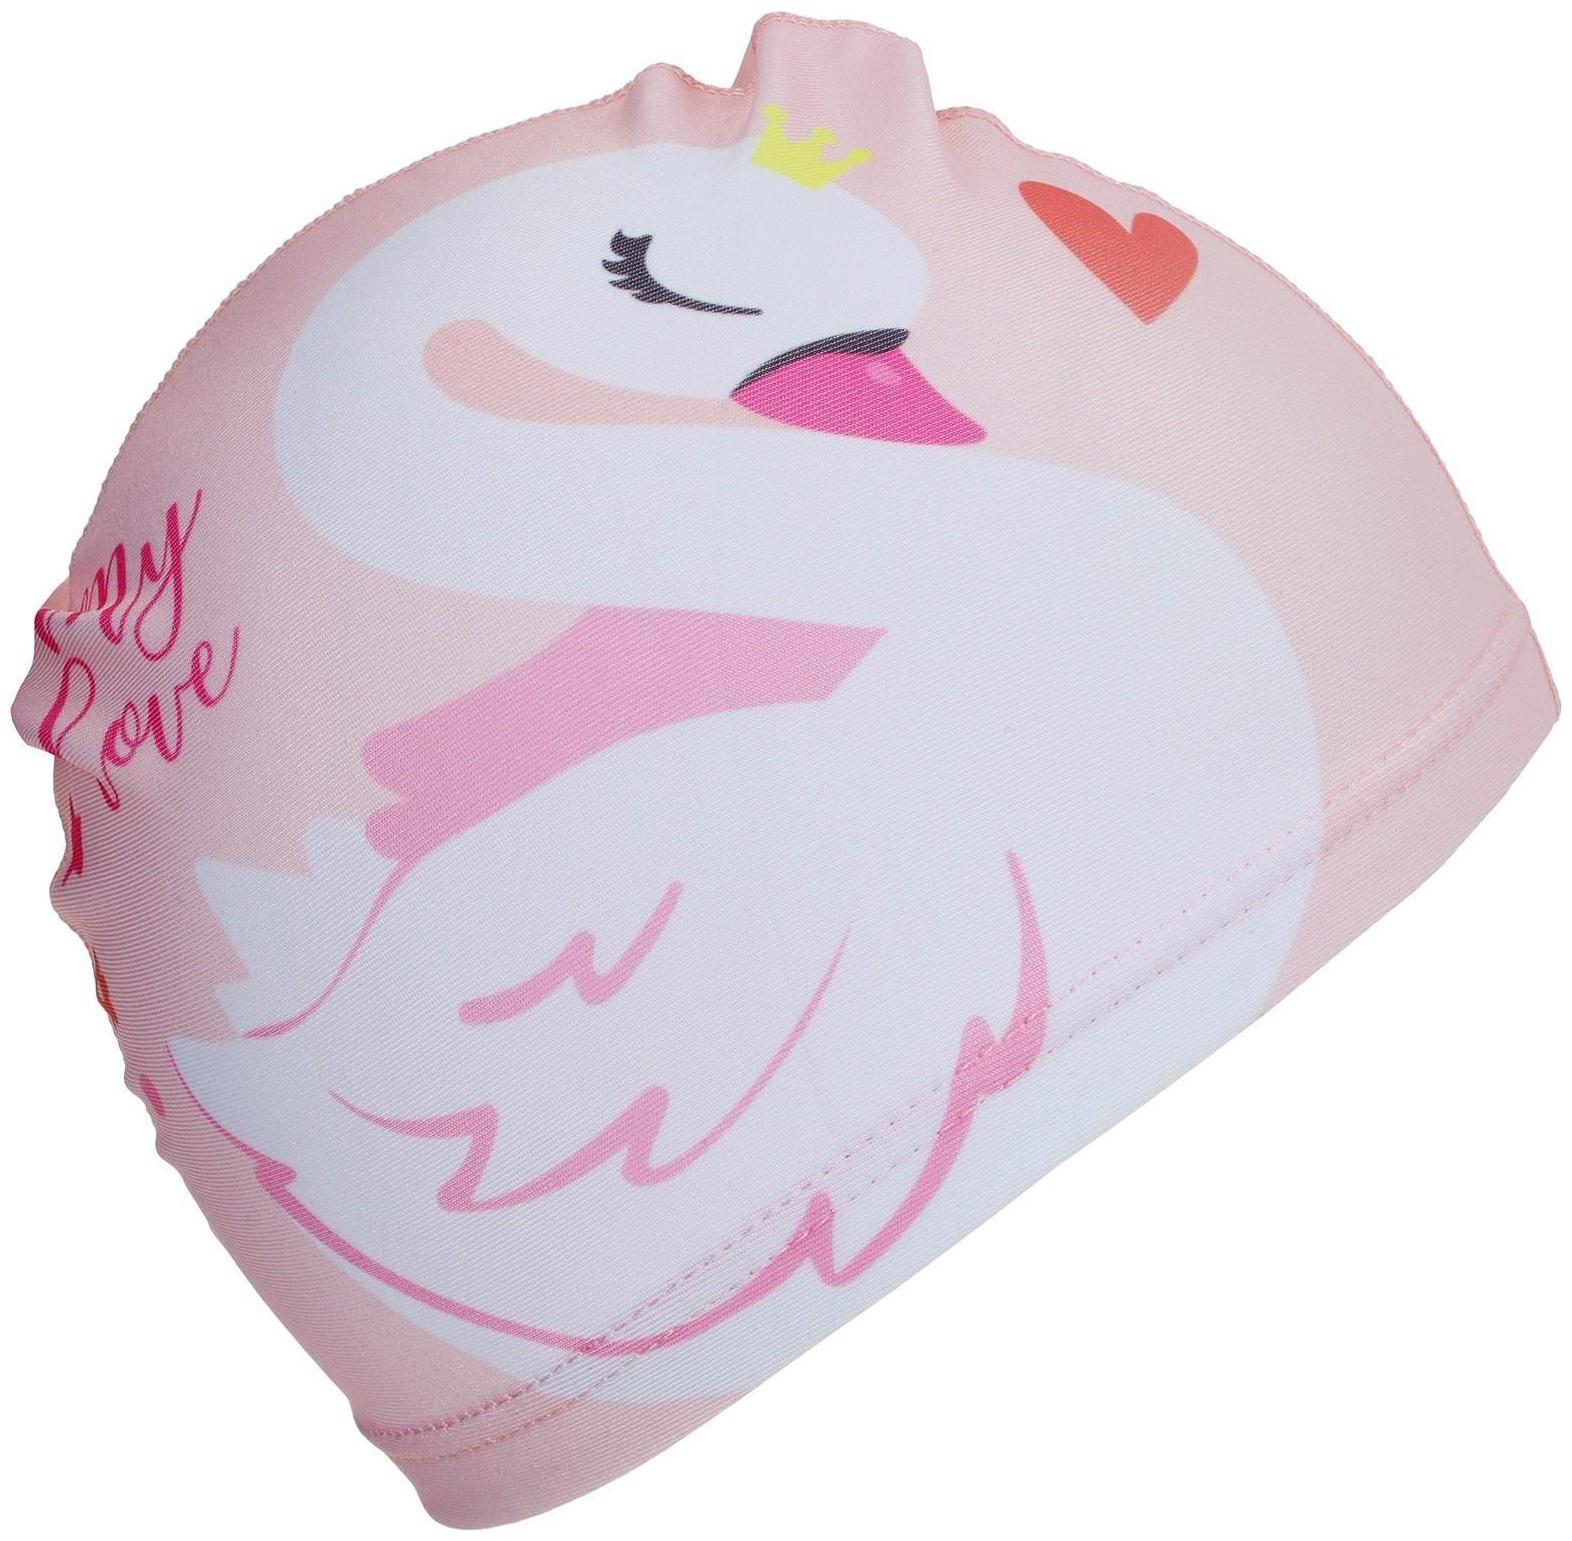 Шапочка для плавания детская «Лебедь», тканевая, обхват 46-52 см, цвет розовый